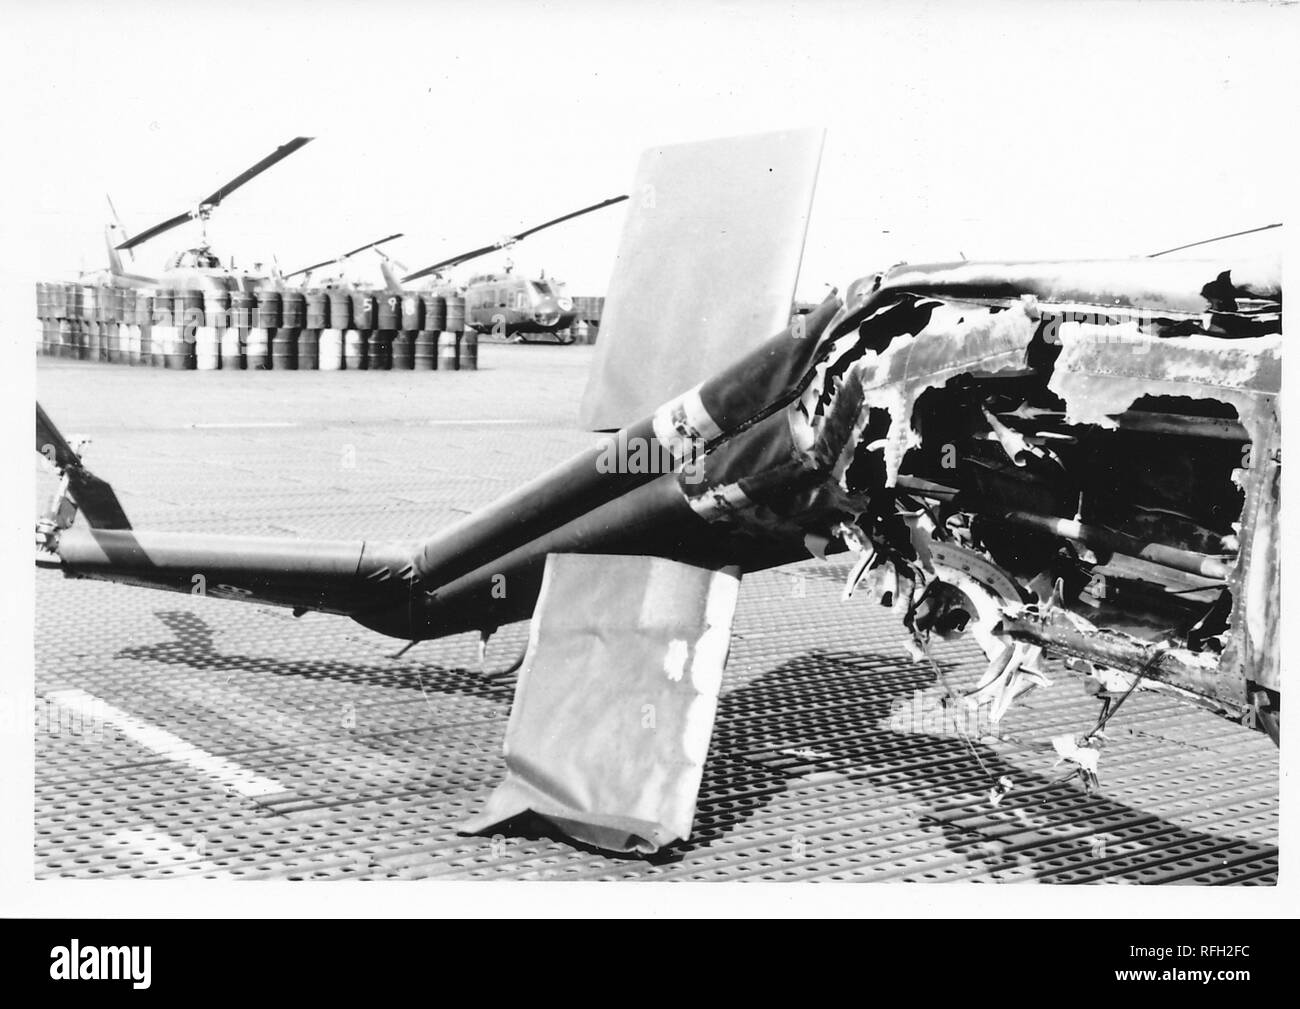 Photographie noir et blanc, montrant l'endommagea de queue et la section de montage du moteur d'un hélicoptère militaire, probablement un Bell UH-1 Huey Iroquois ('') avec barils et plus d'hélicoptères visible à l'arrière-plan, photographié lors de la guerre du Vietnam, 1968. () Banque D'Images